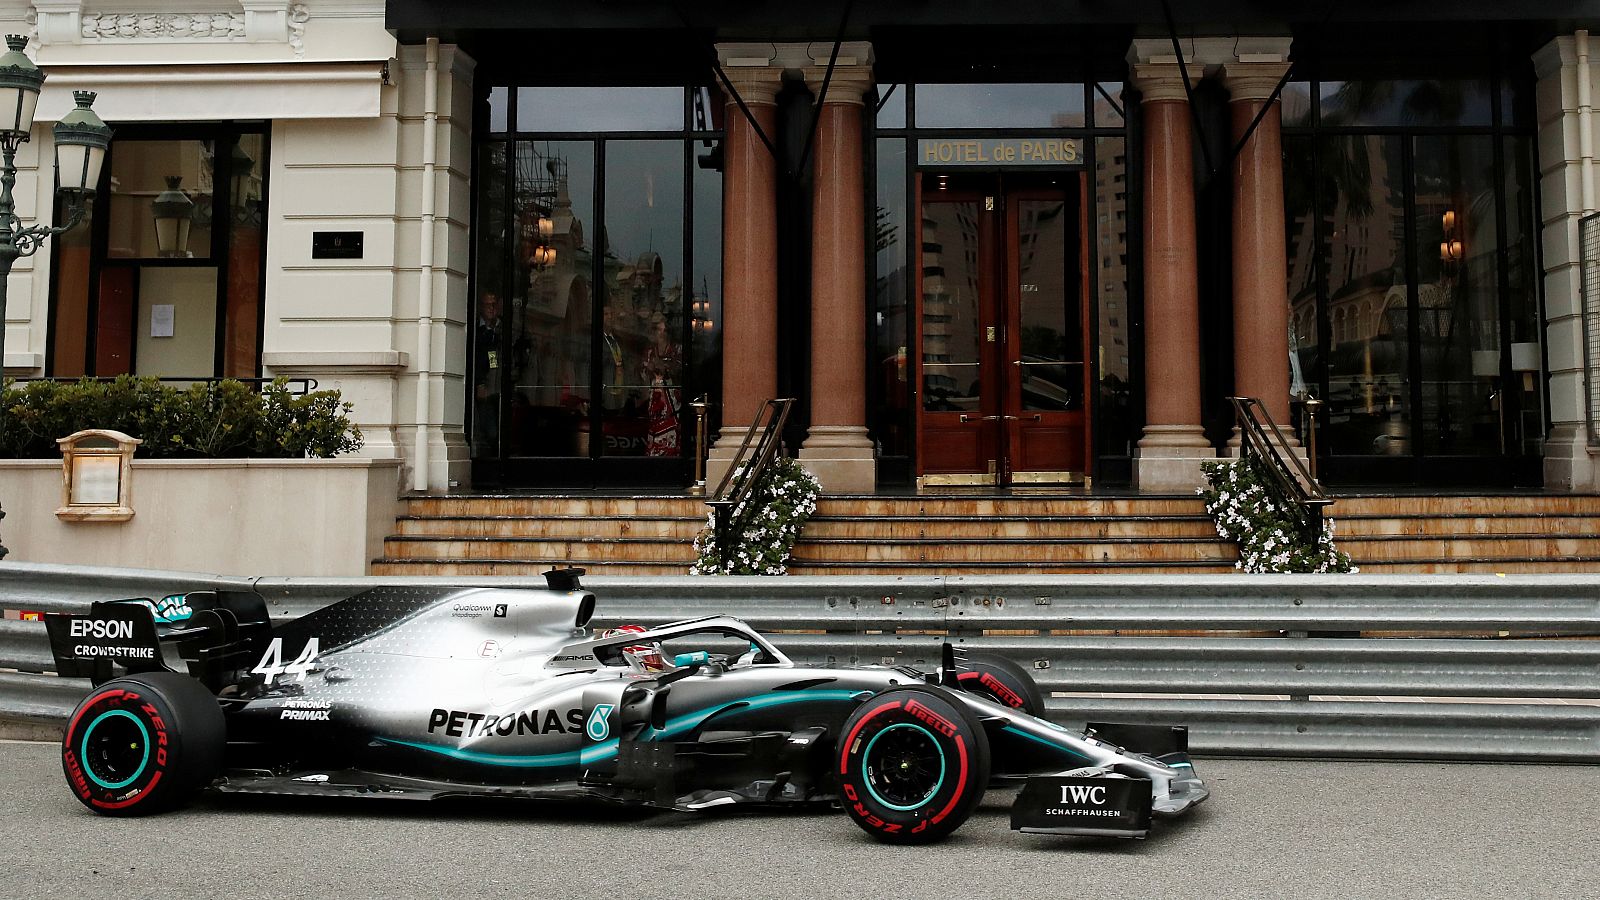 El Mercedes de Lewis Hamilton pasa frente a la puerta del Hotel de París de Mónaco.